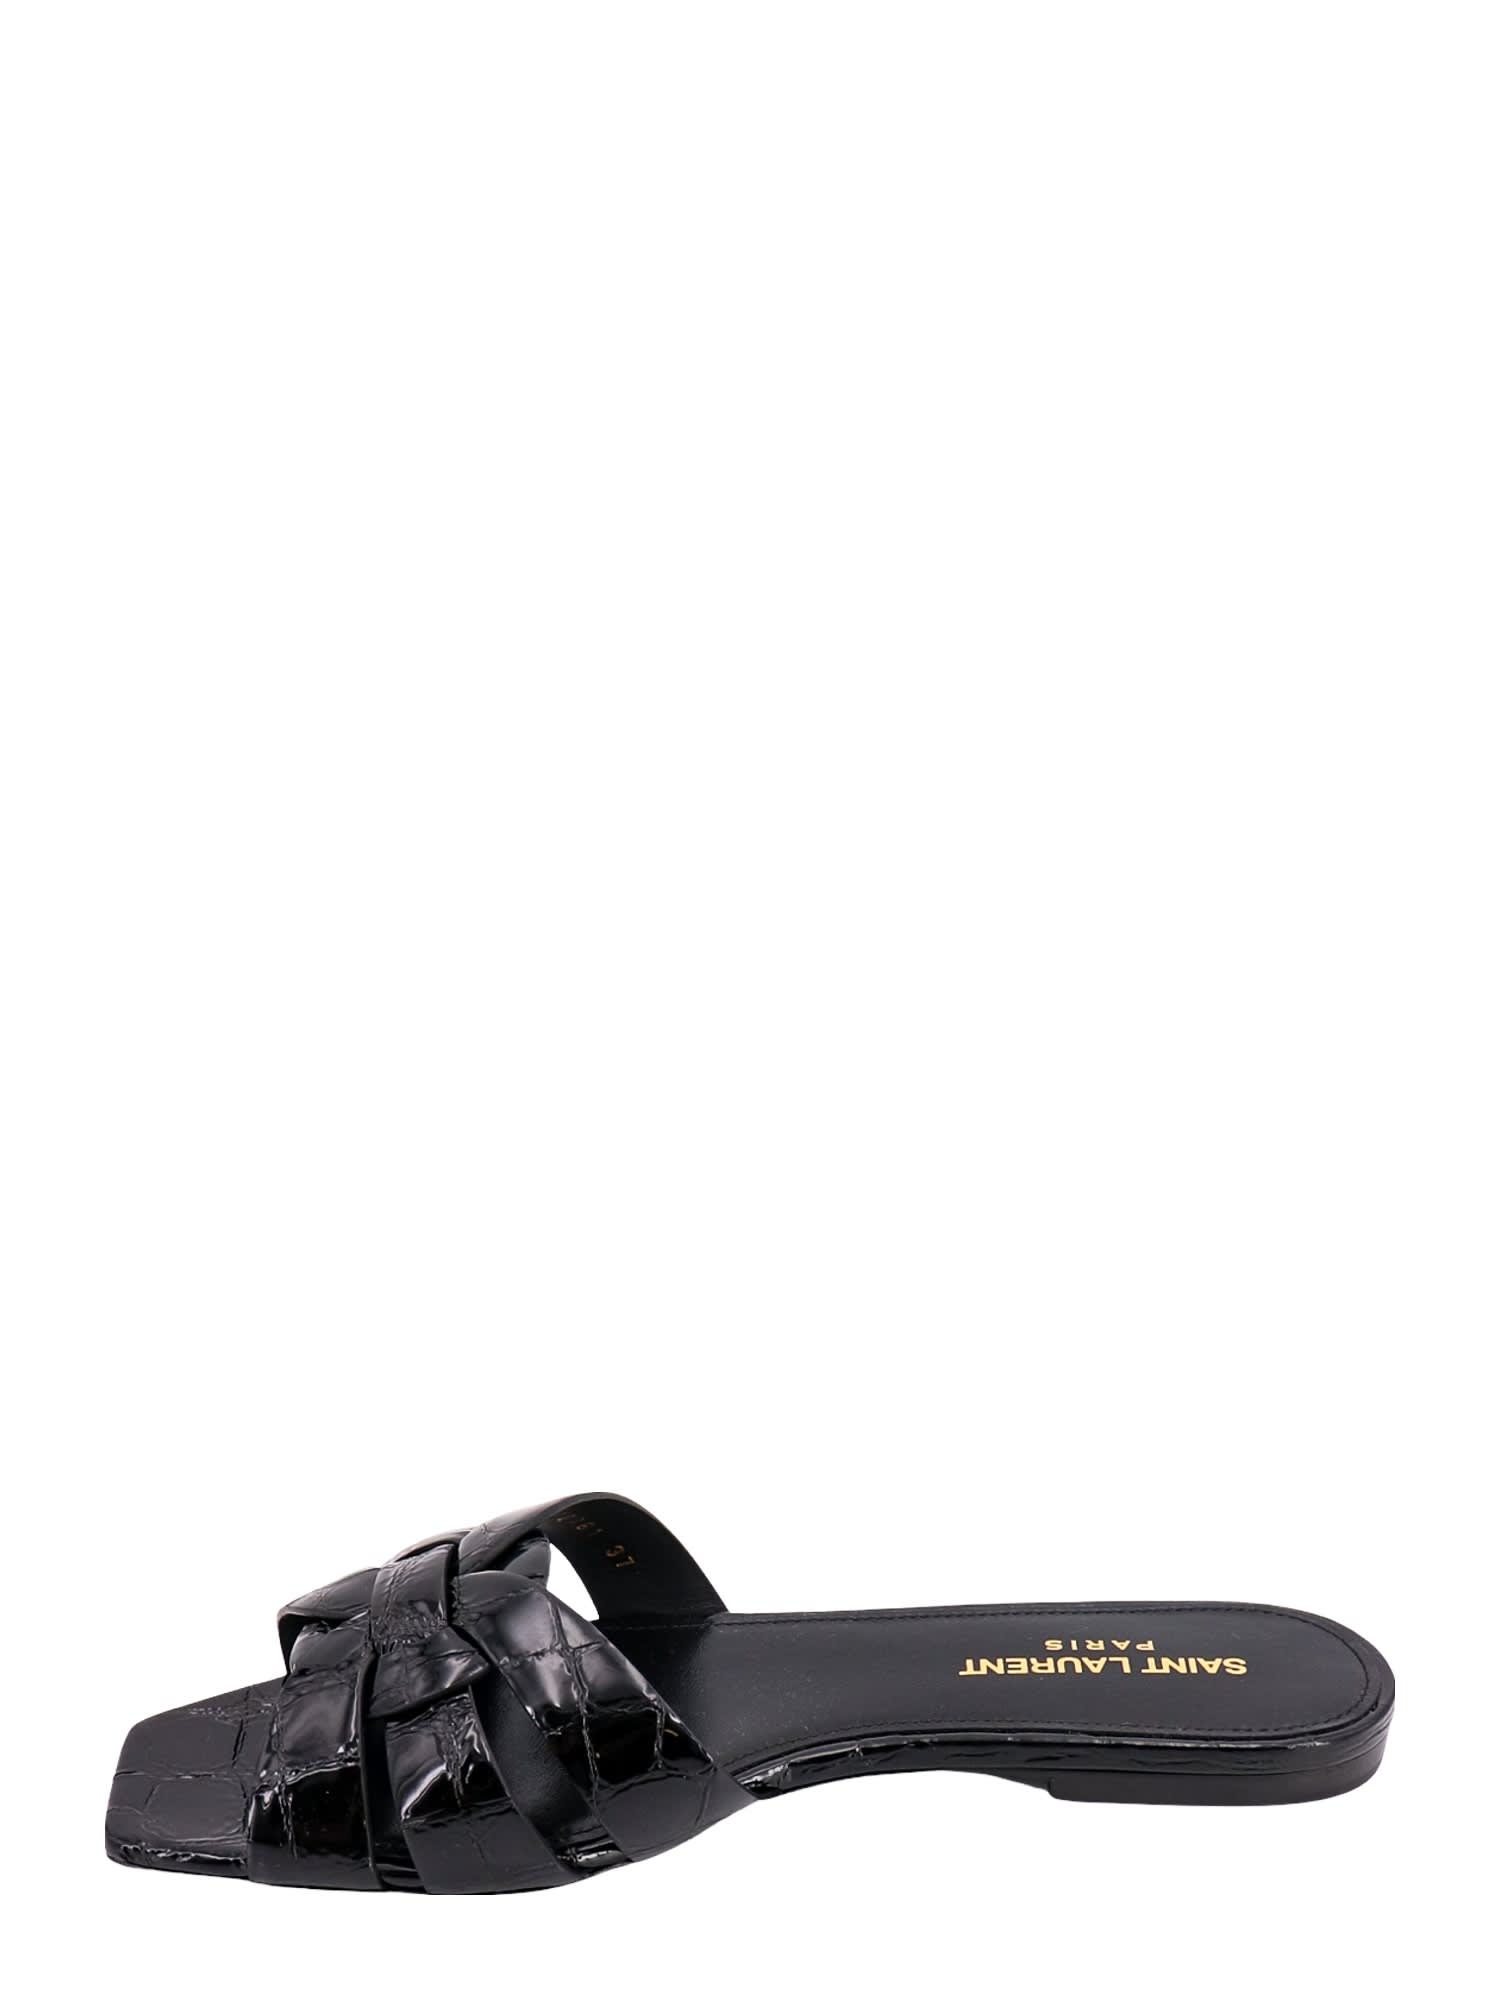 Shop Saint Laurent Tribute Sandals In Black